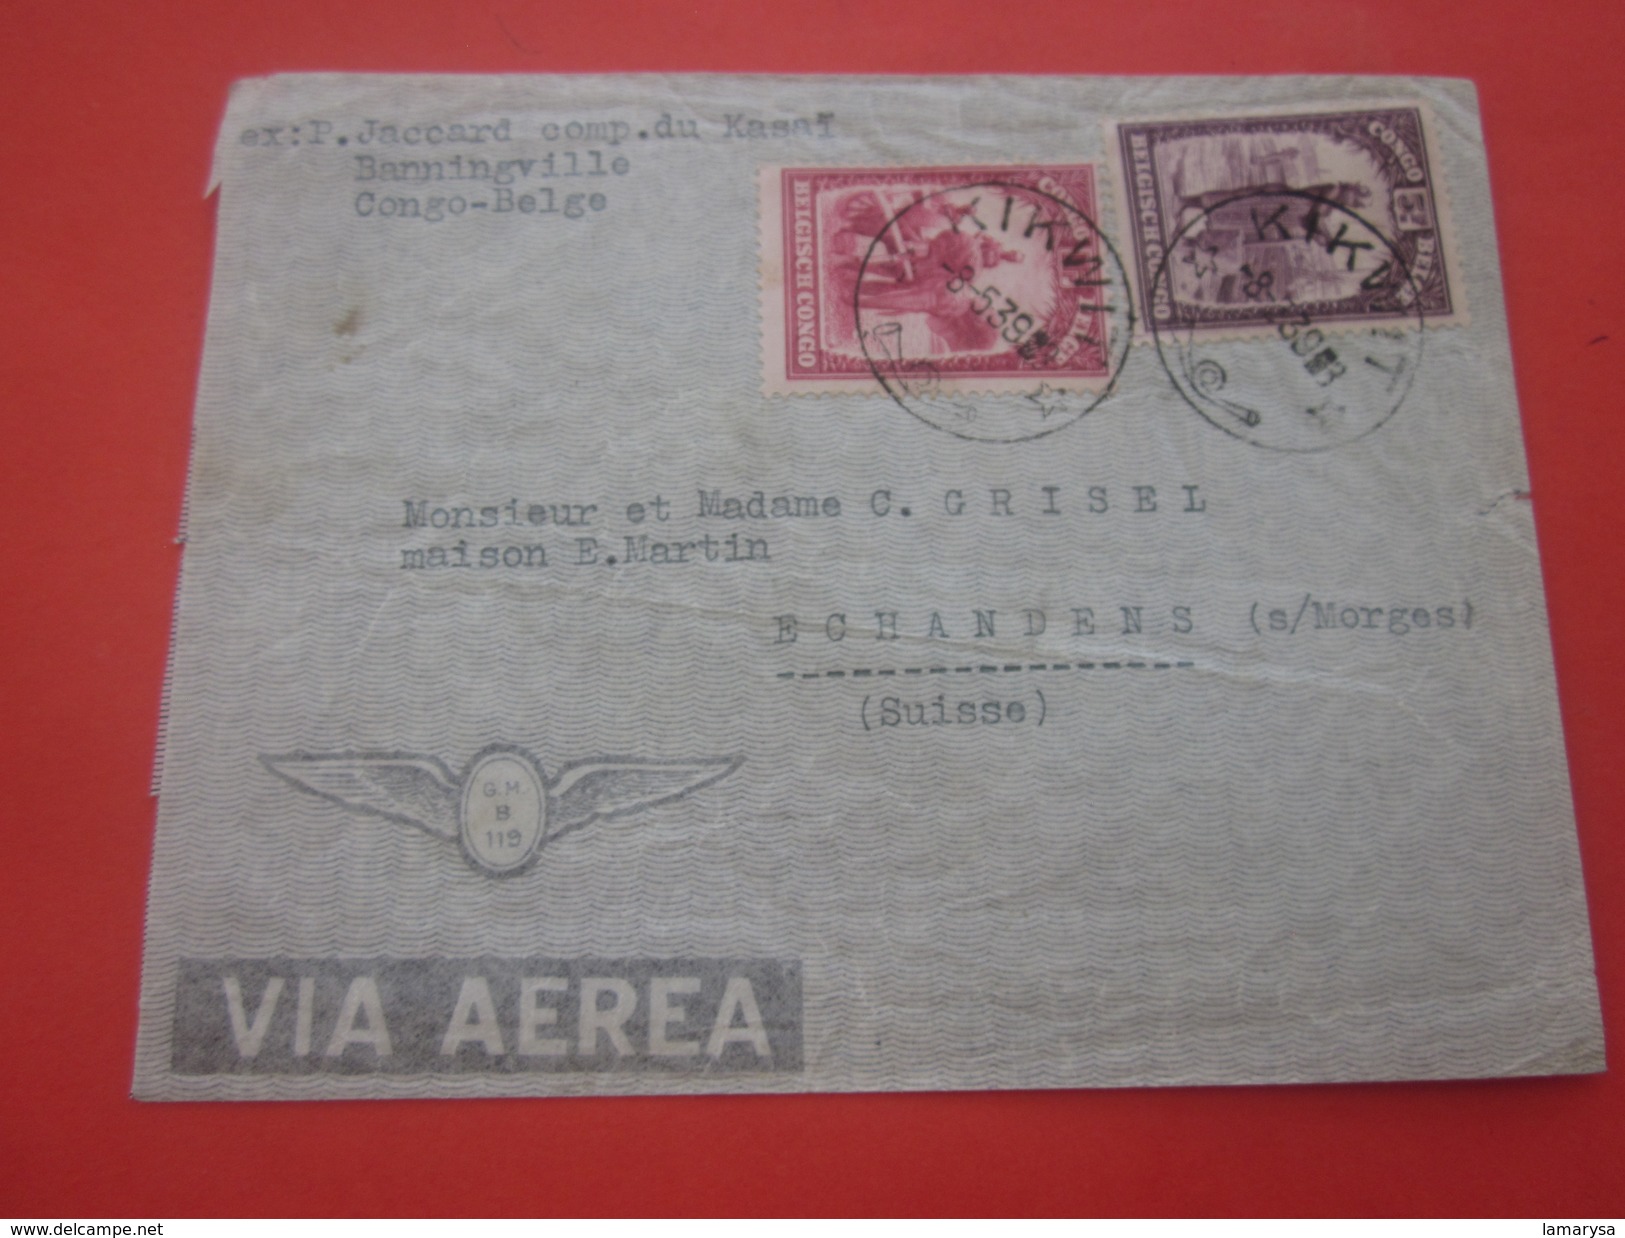 Kikwit--Timbre-Afrique-Congo-Kinshasa-Congo Belge-1923-44: Marcophilie-Lettre-Document Par Avion-By Air-mail---Suisse - Covers & Documents